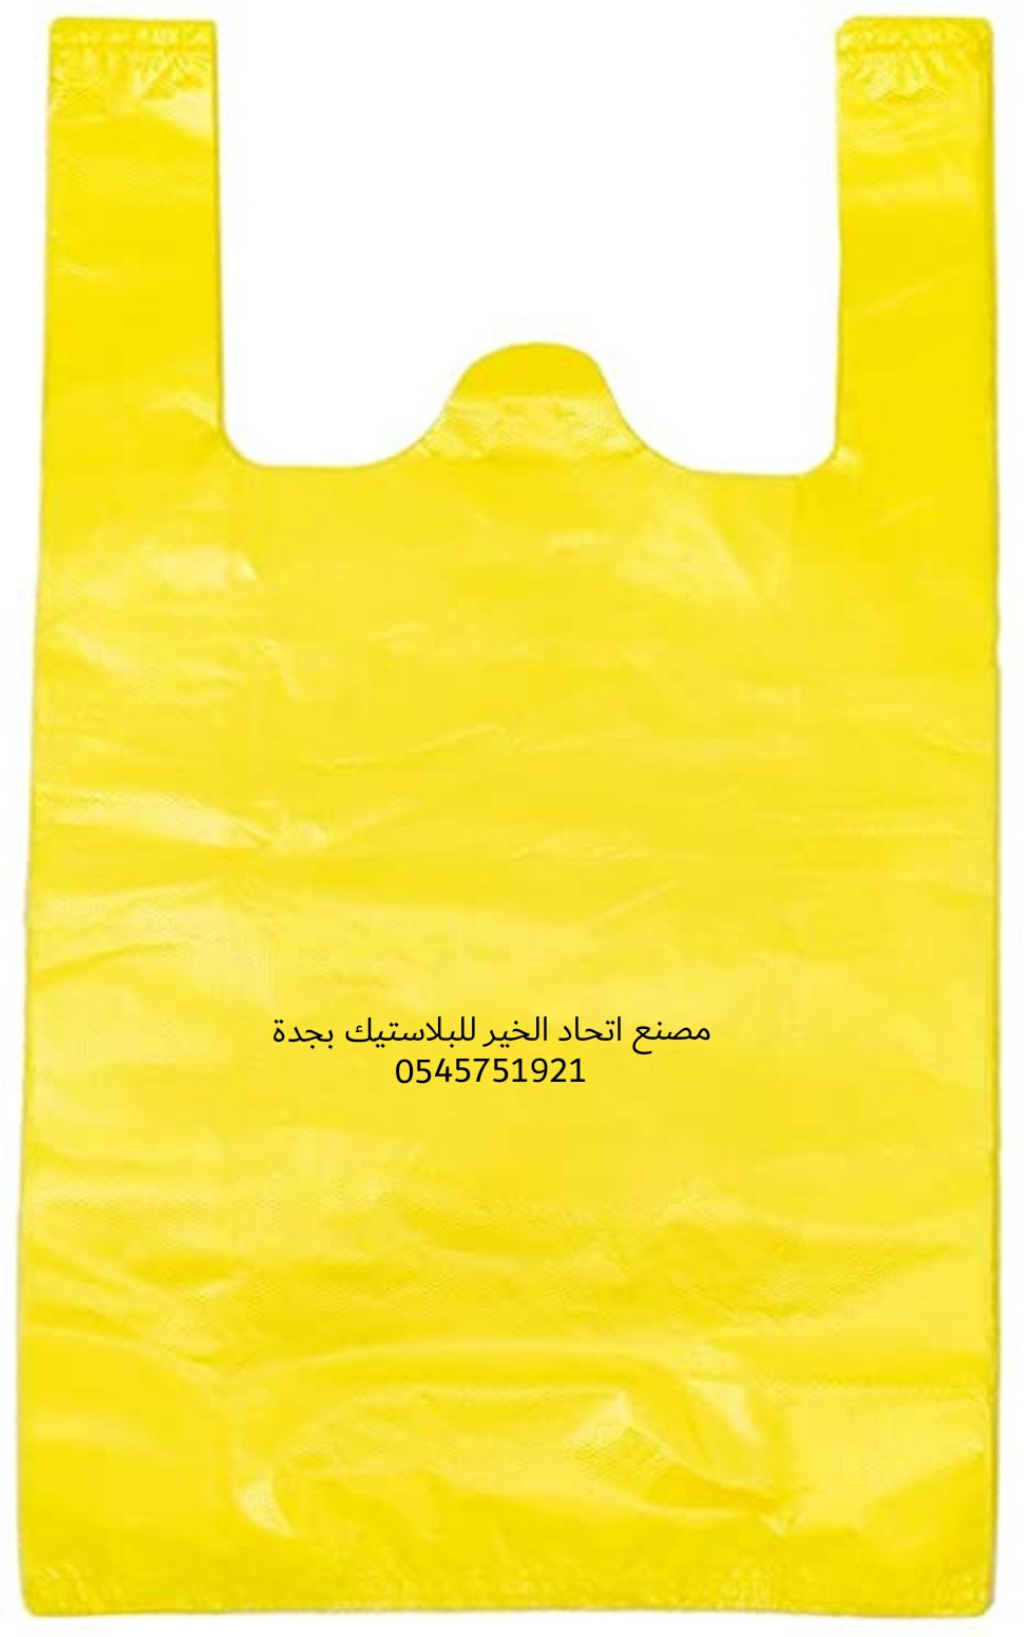 اتحاد الخير لبيع الأكياس البلاستيكية في جدة 0545751921 اكياس شتلات للبيع بجدة  P_1954nidvv5